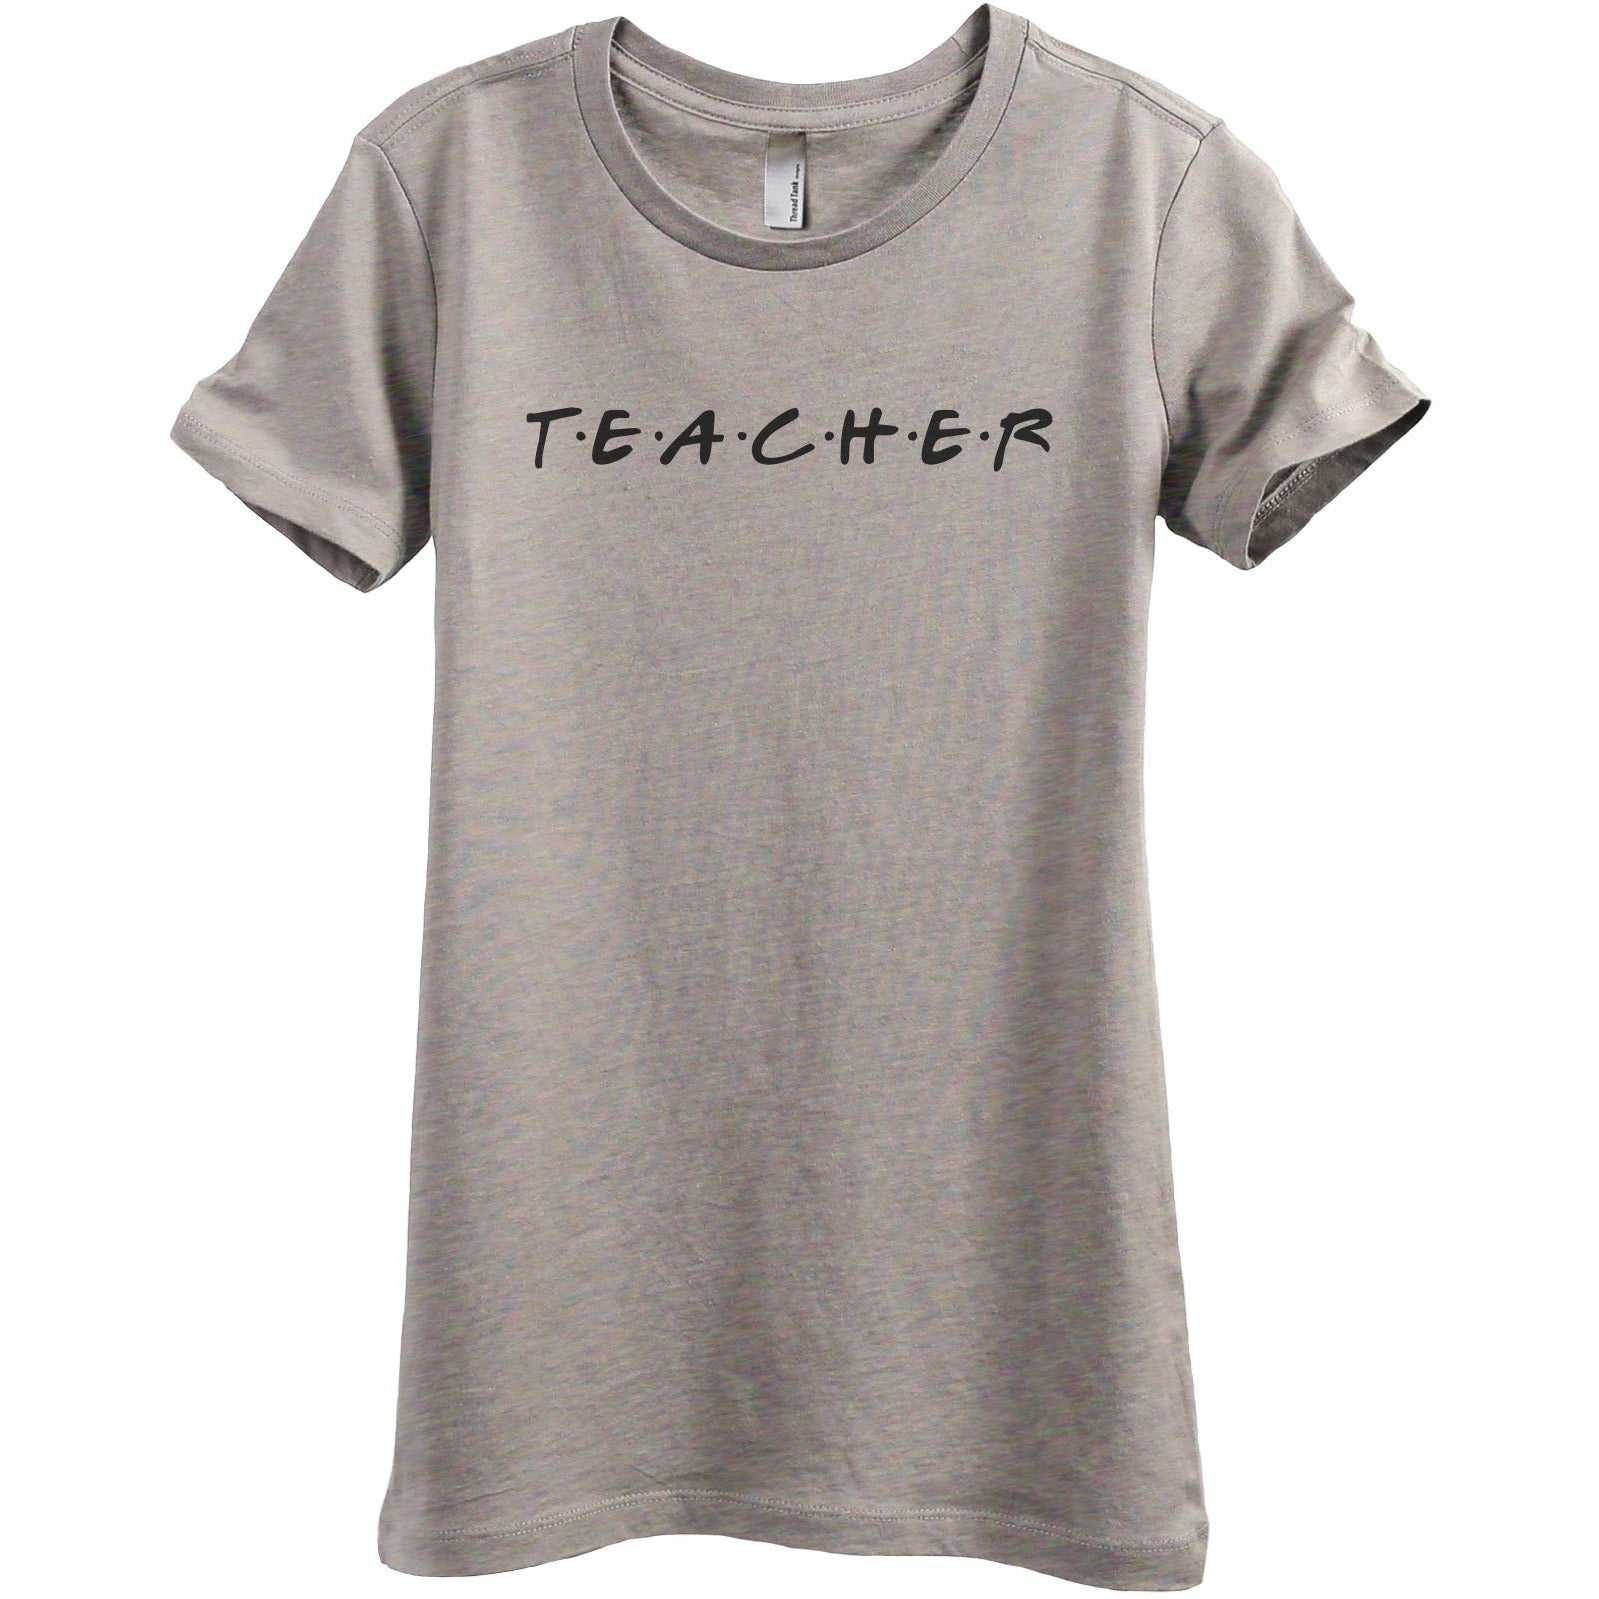 Teacher Friends - Stories You Can Wear